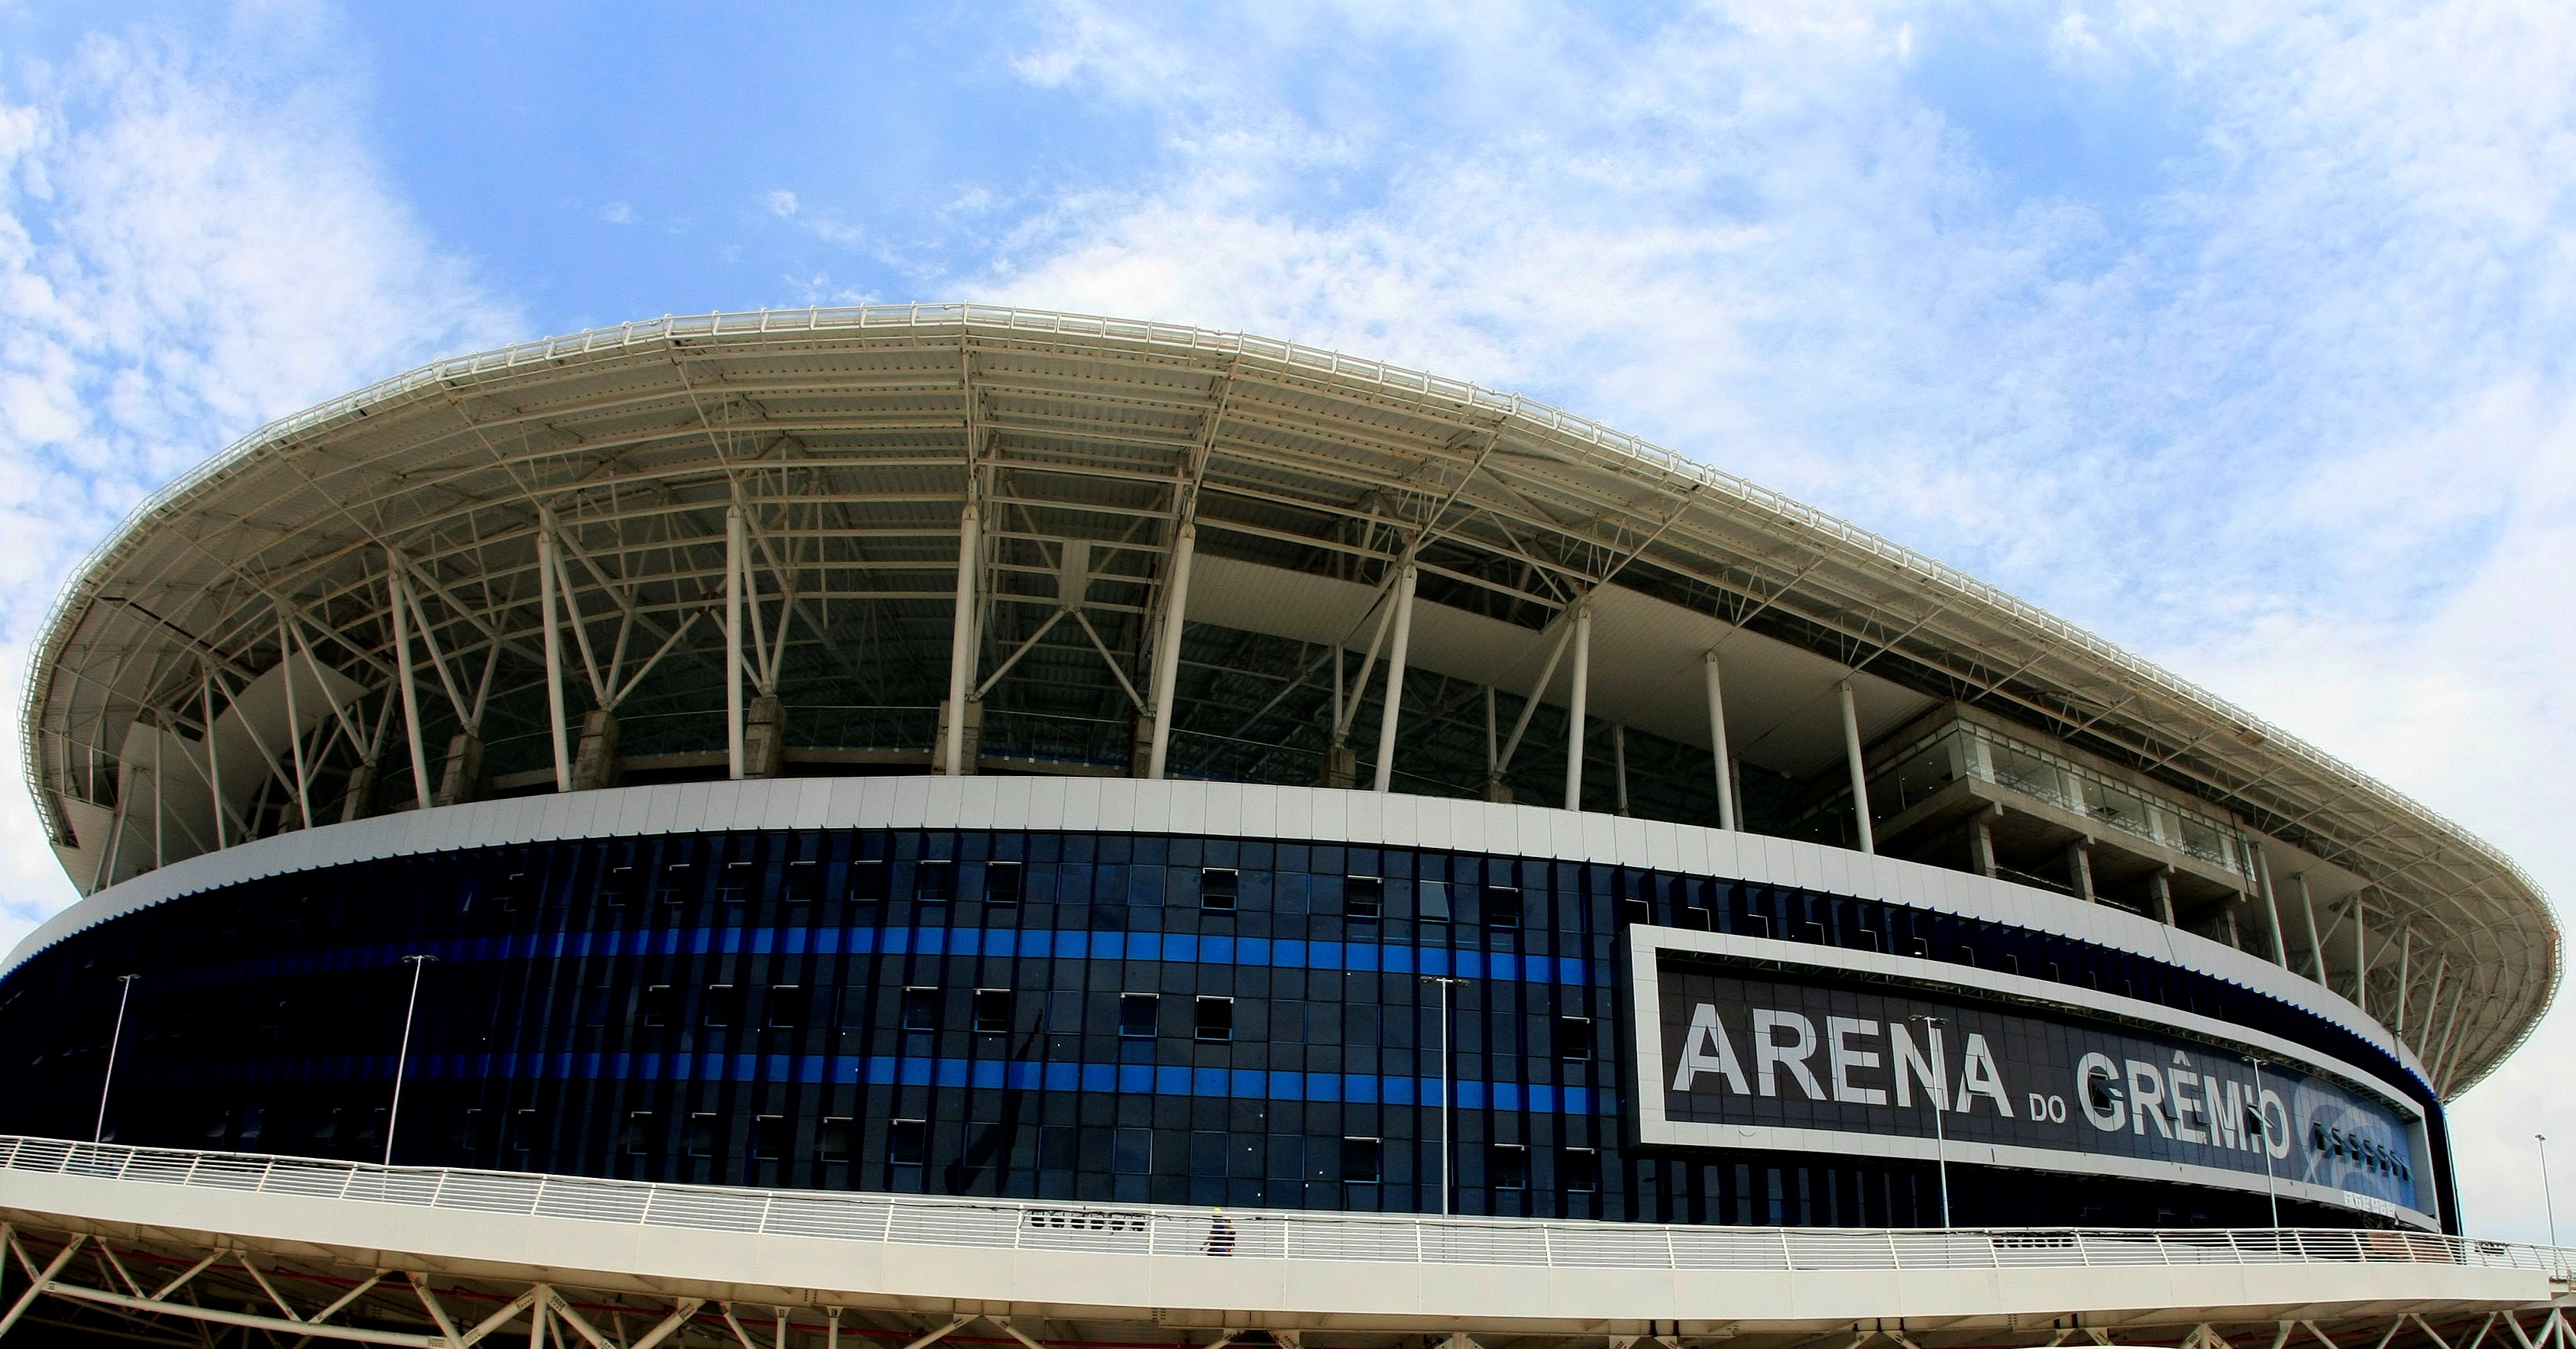 arena do grêmio, estádio do time Grêmio em porto alegre